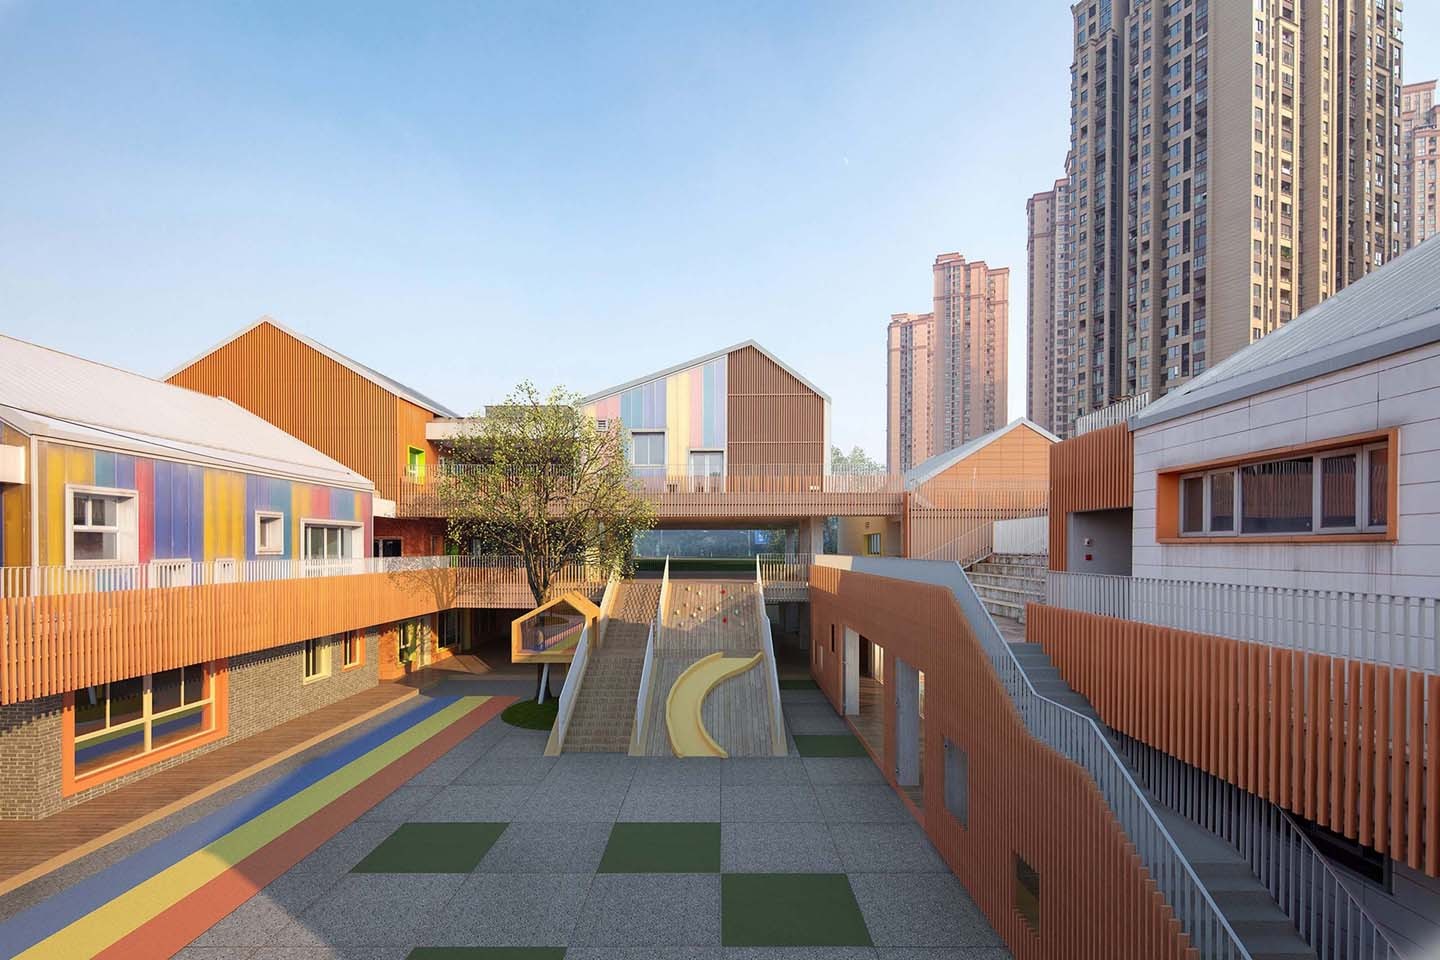 Escola na China usa cores e arquitetura para inspirar os alunos (Foto: Divulgação)